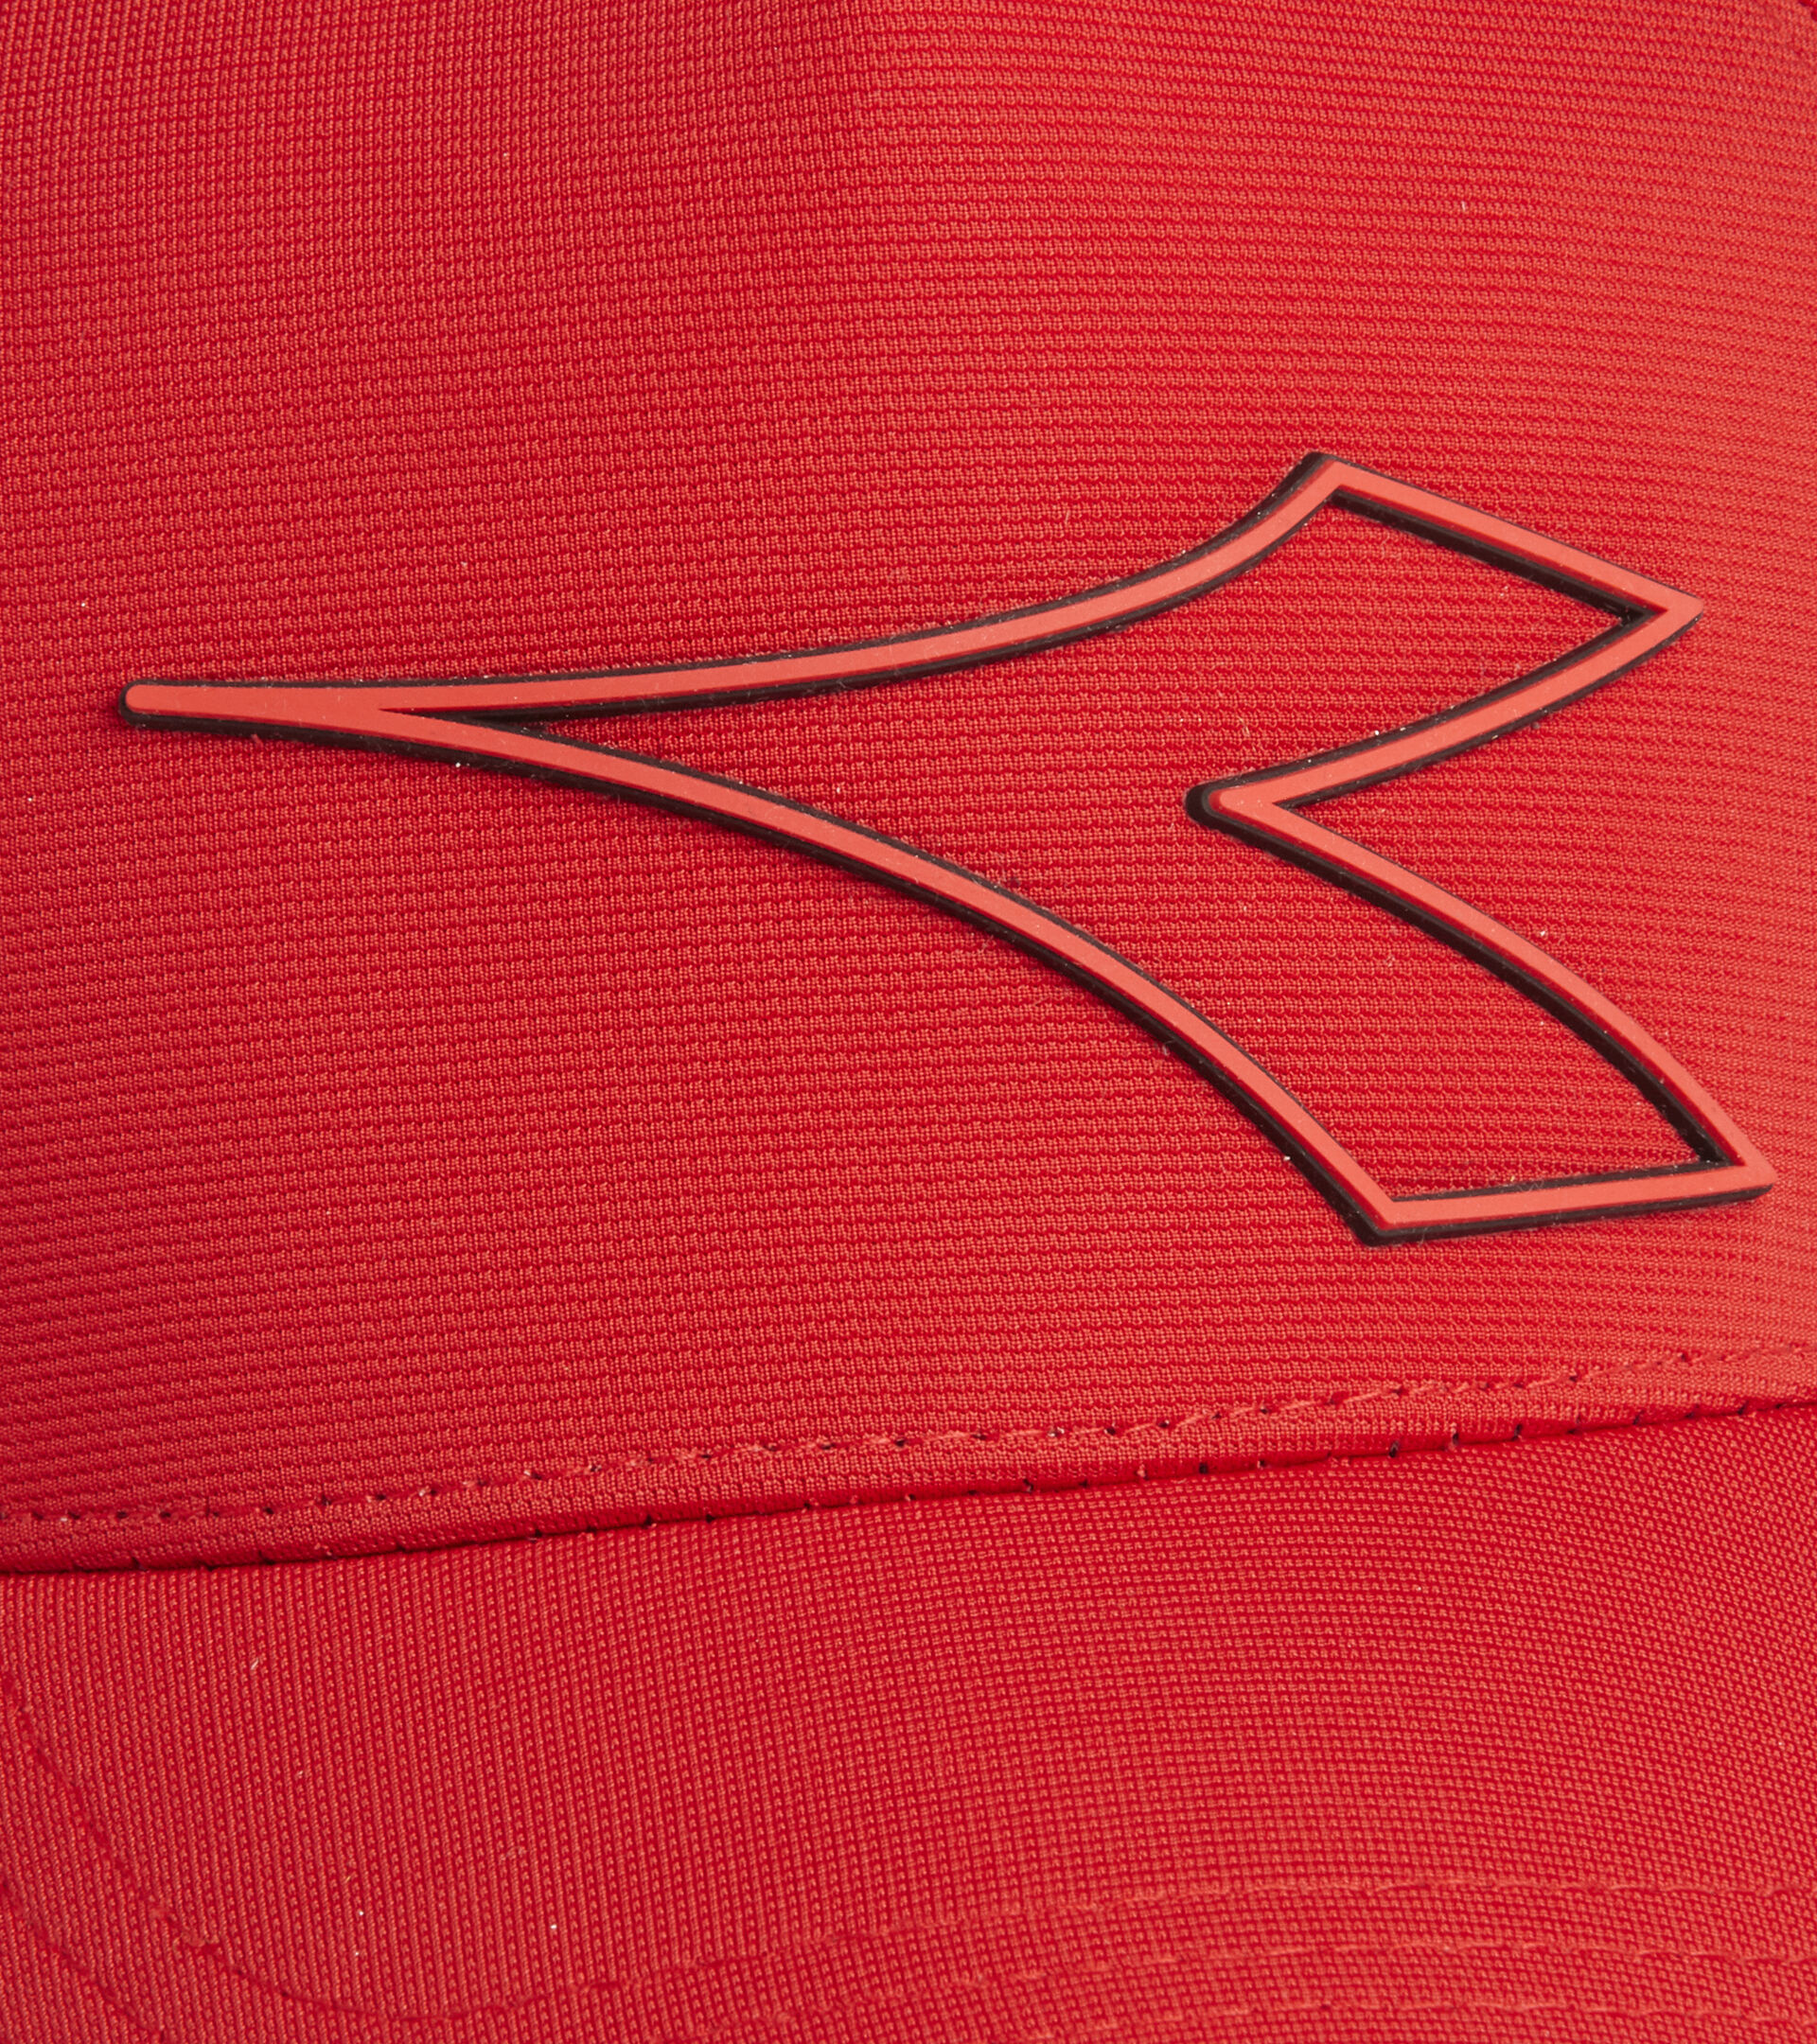 Baseballkappe BASEBALL CAP WAHRROT - Utility